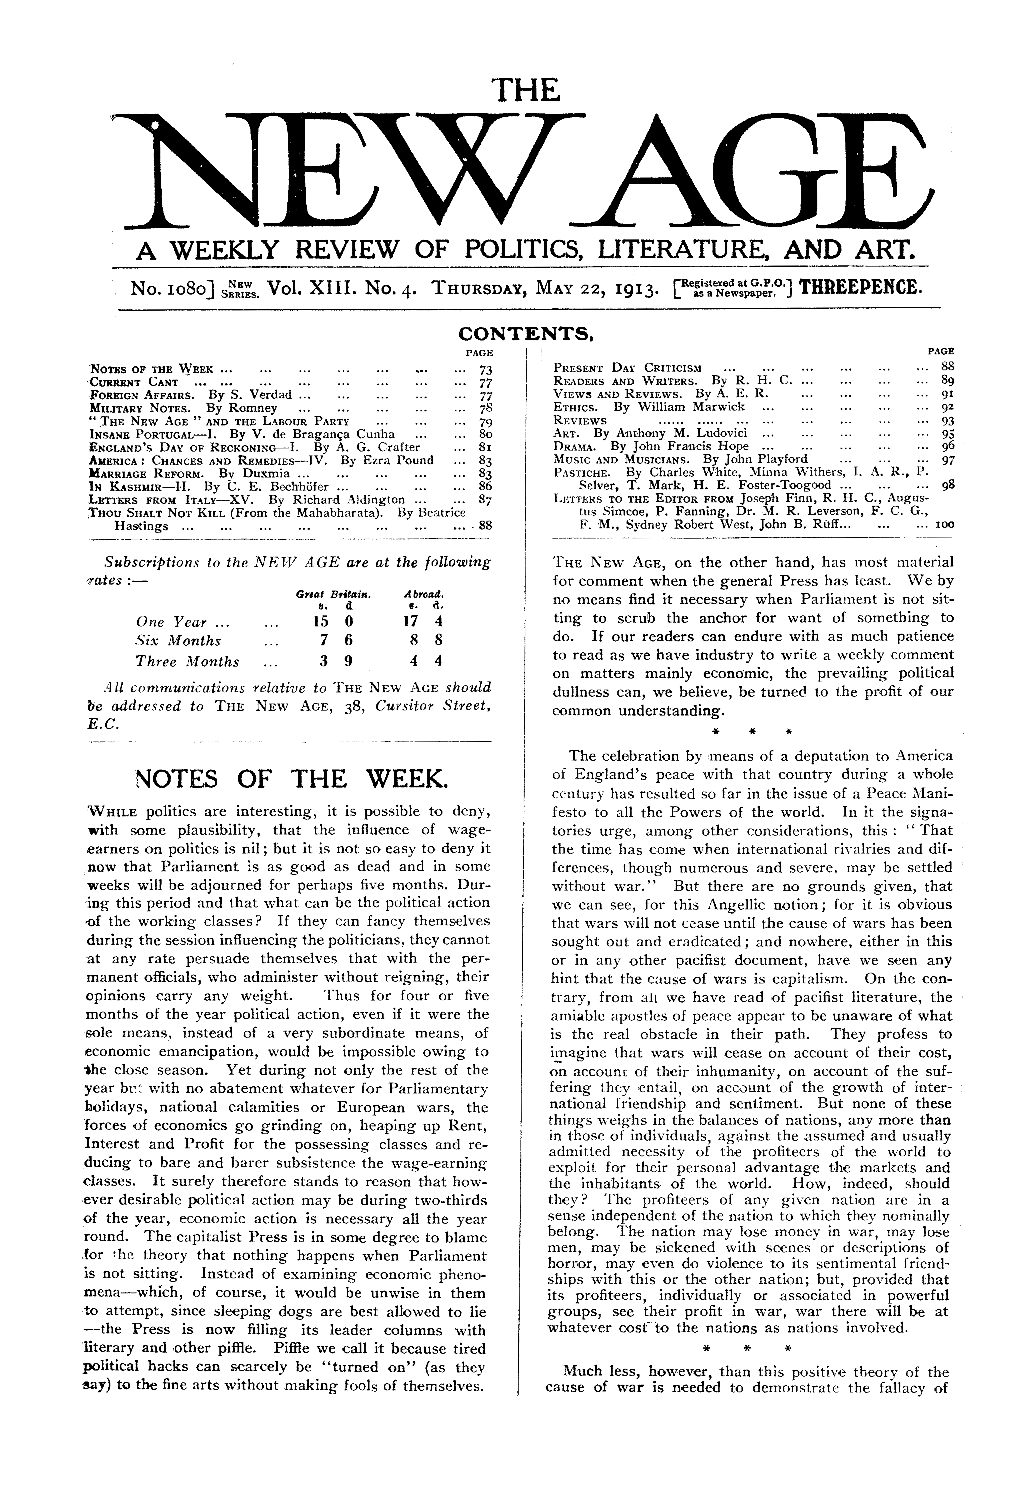 New Age, Vol.13, No.4, May 22, 1913